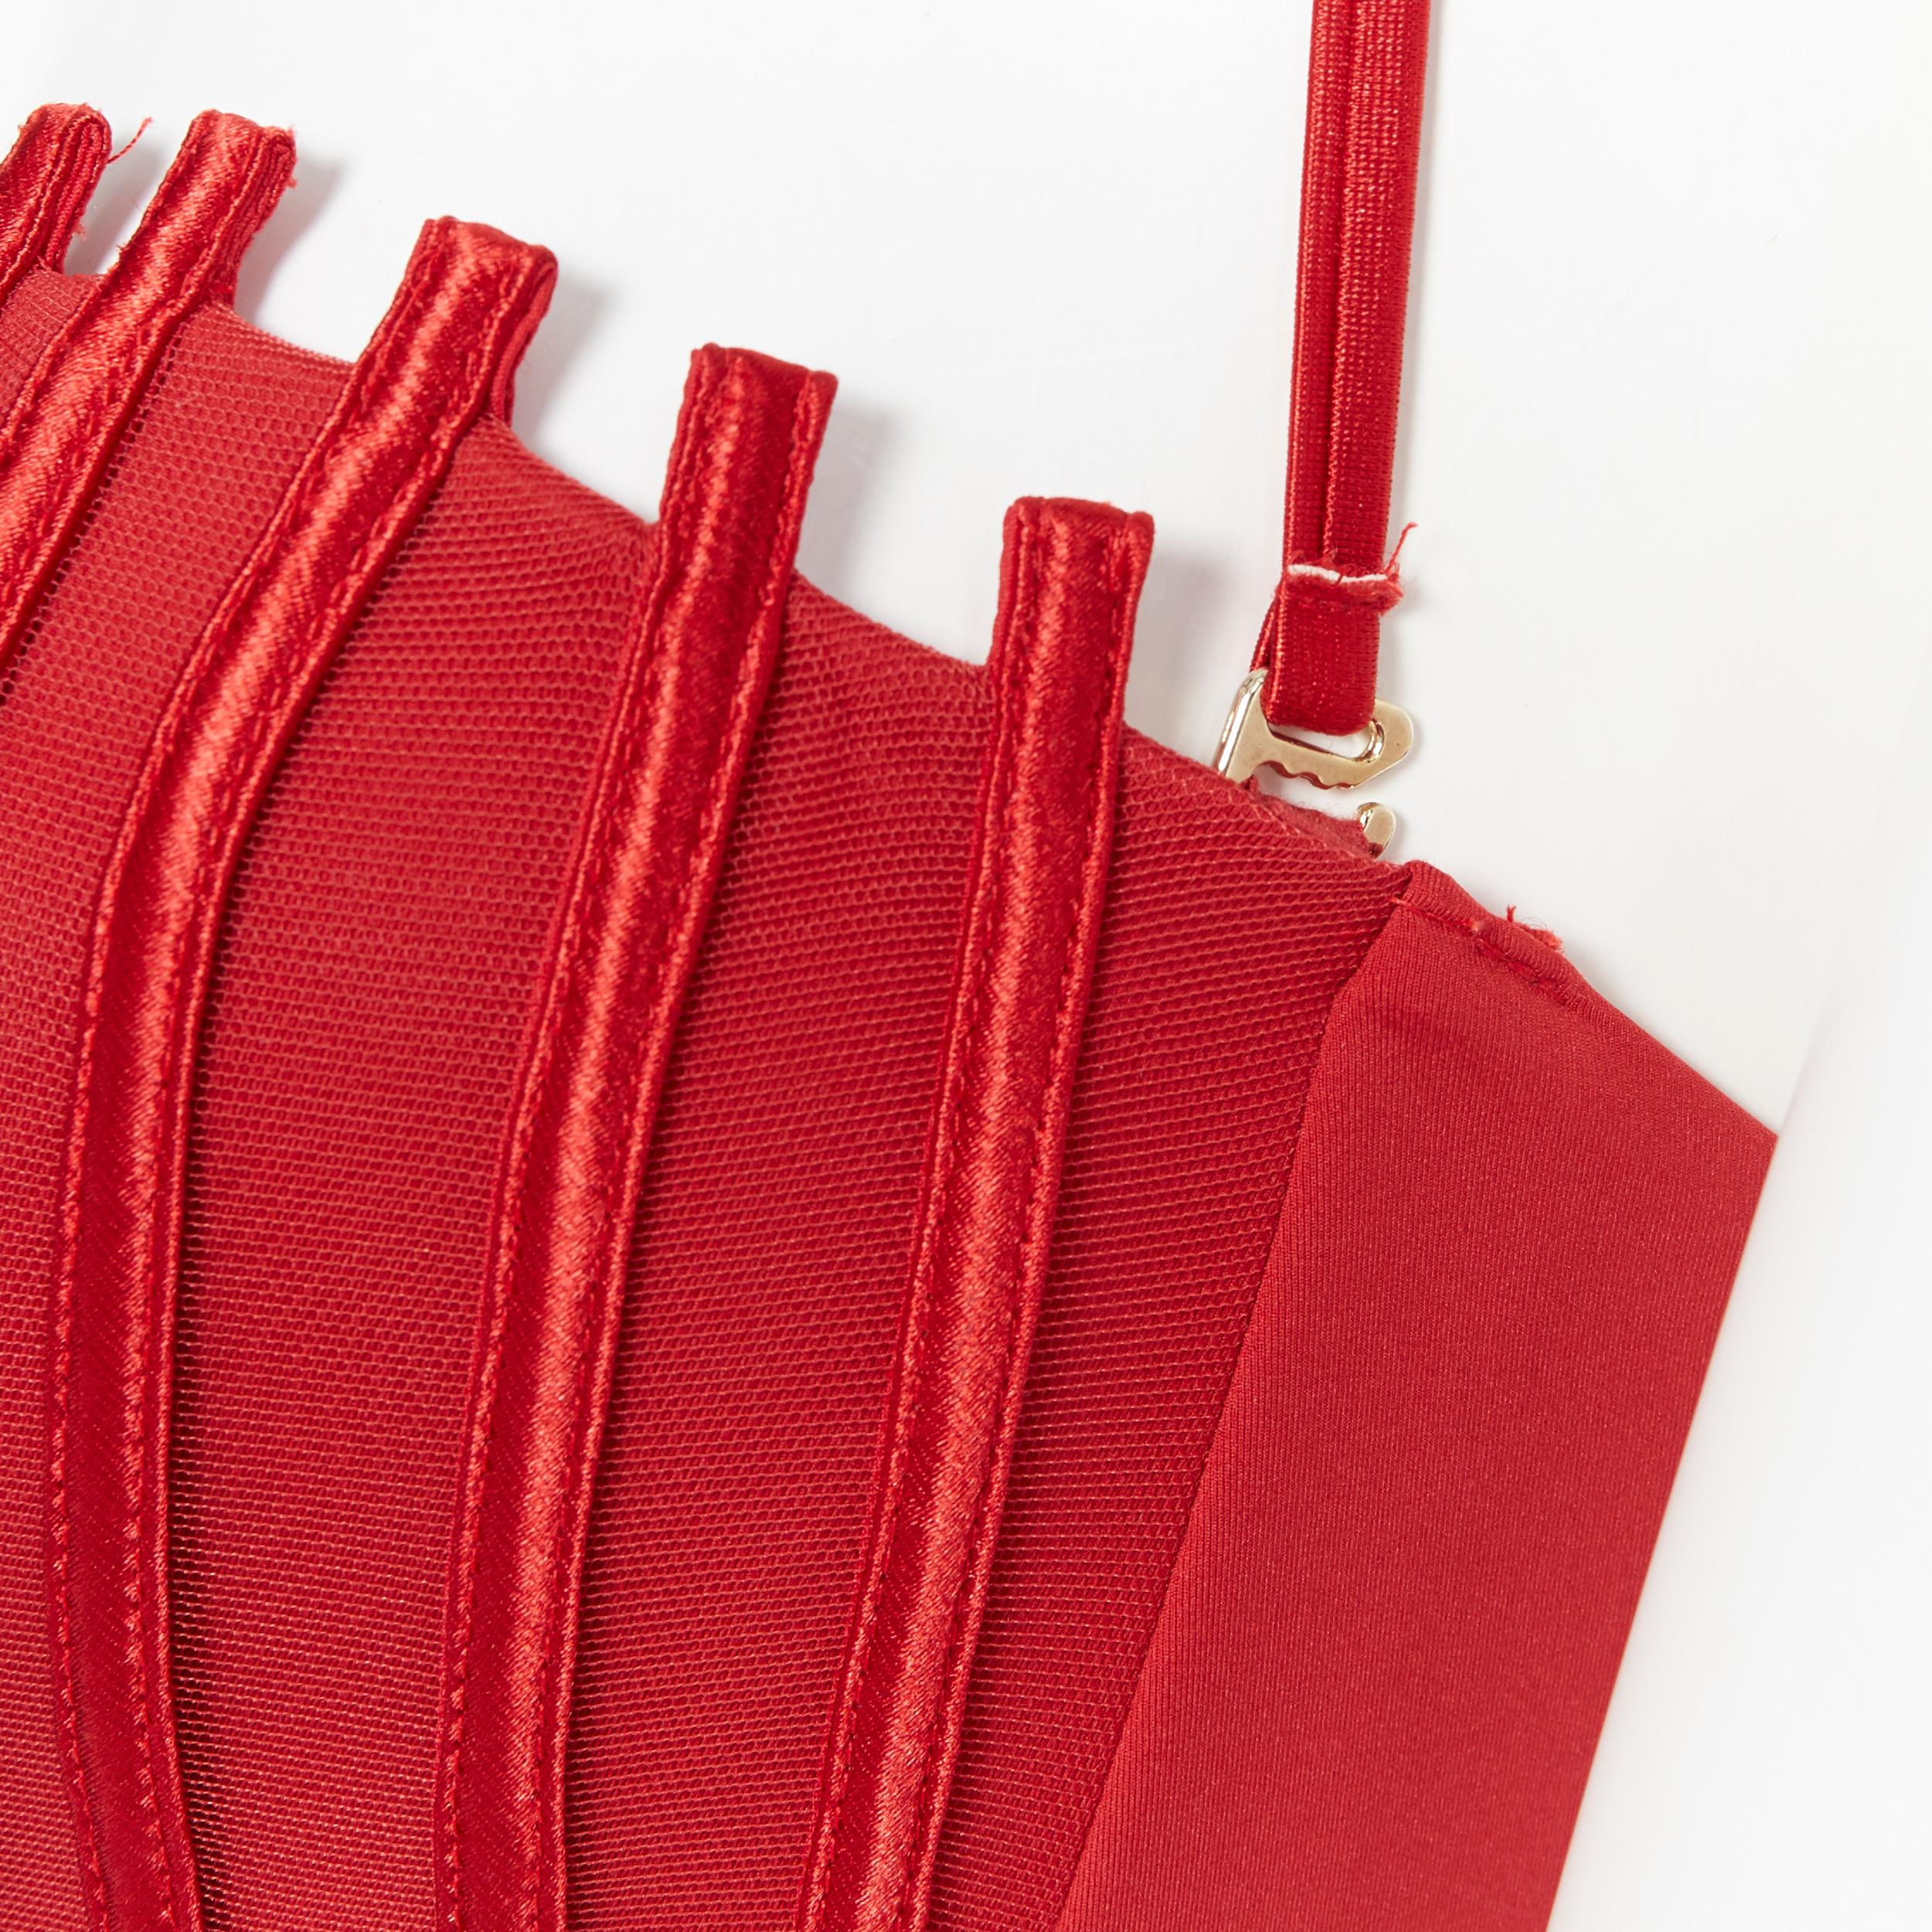 neu LA PERLA Graphique Couture rot entbeint schiere Körper Monokini Badeanzug IT42B S 6